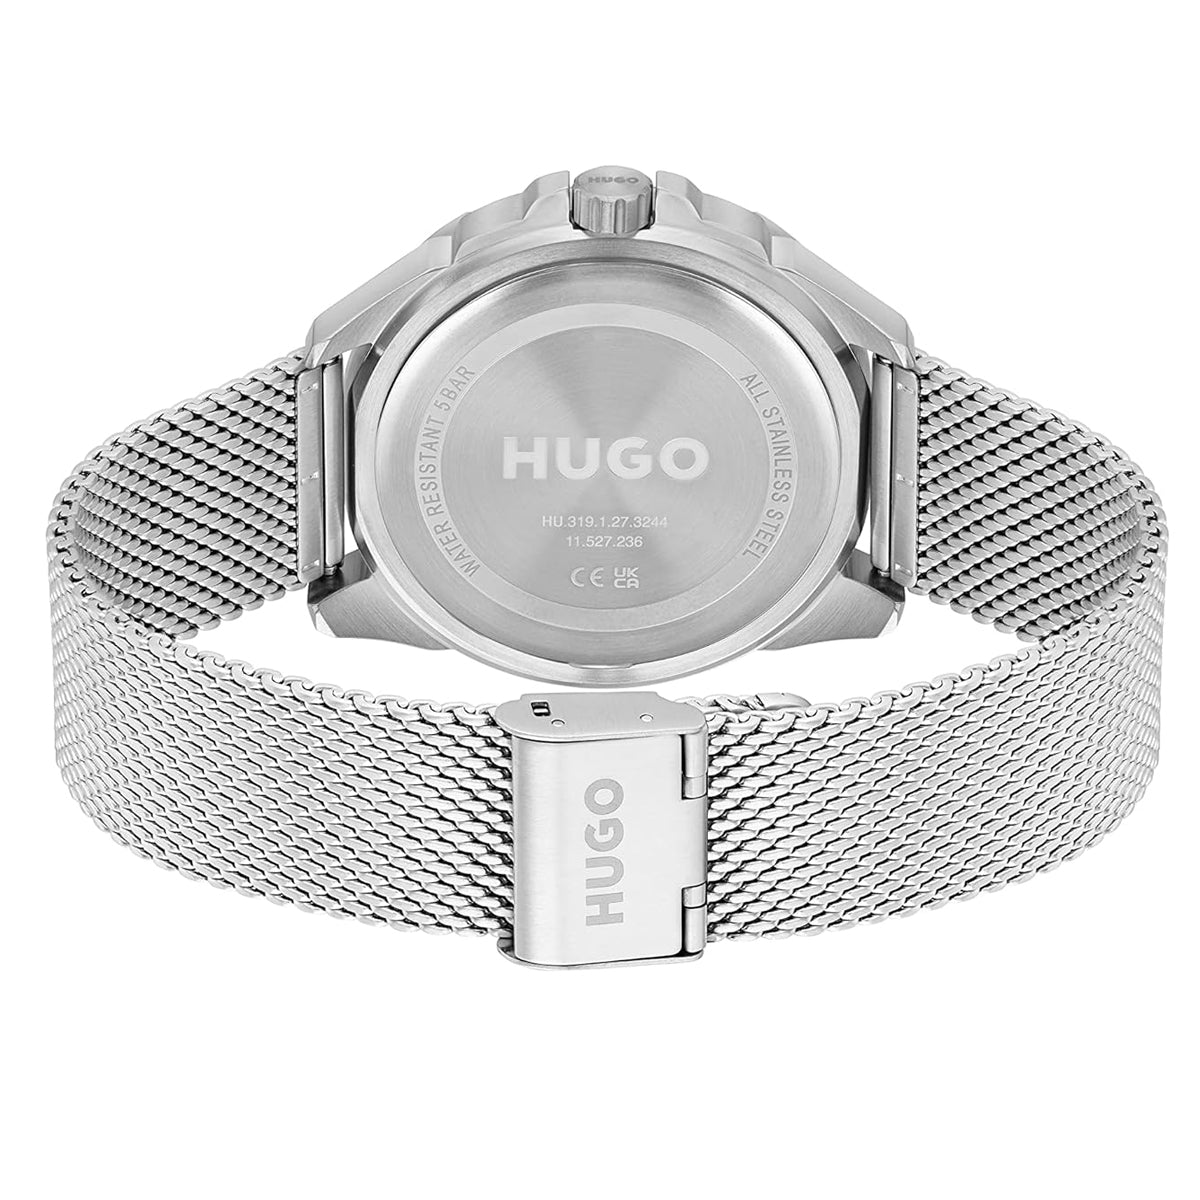 Hugo Boss - Fresh - HB153.0287